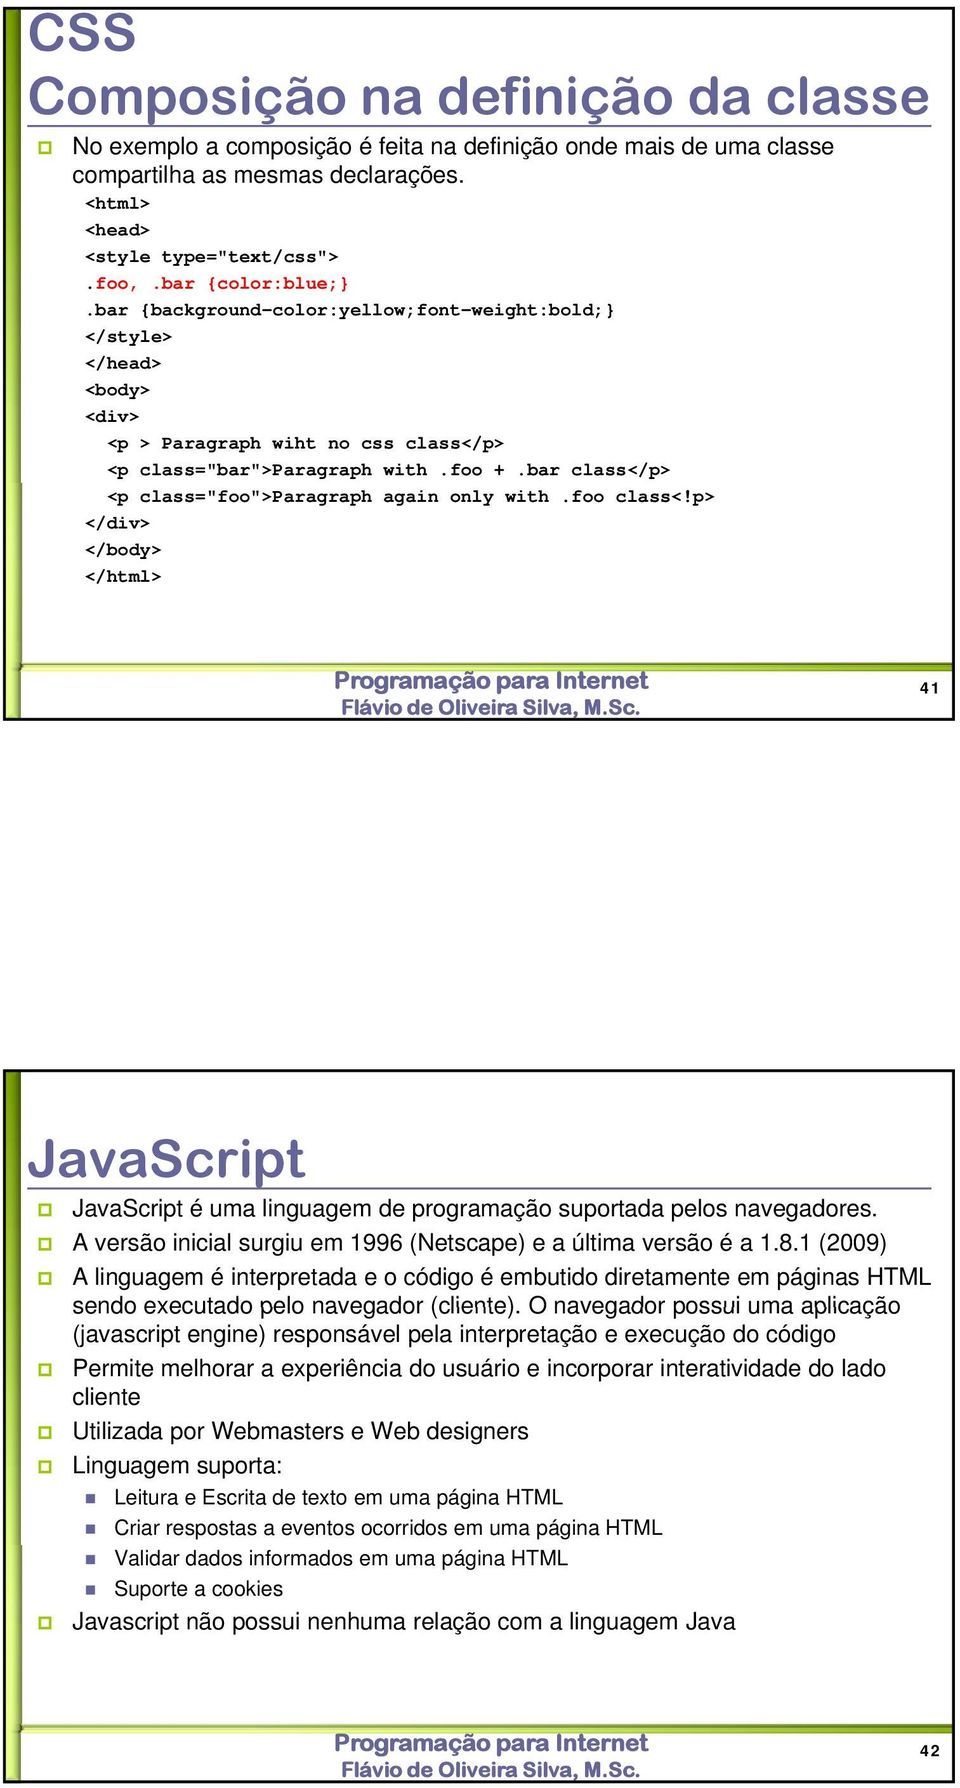 bar class</p> <p class="foo">paragraph again only with.foo class<!p> </div> </body> </html> 41 JavaScript JavaScript é uma linguagem de programação suportada pelos navegadores.